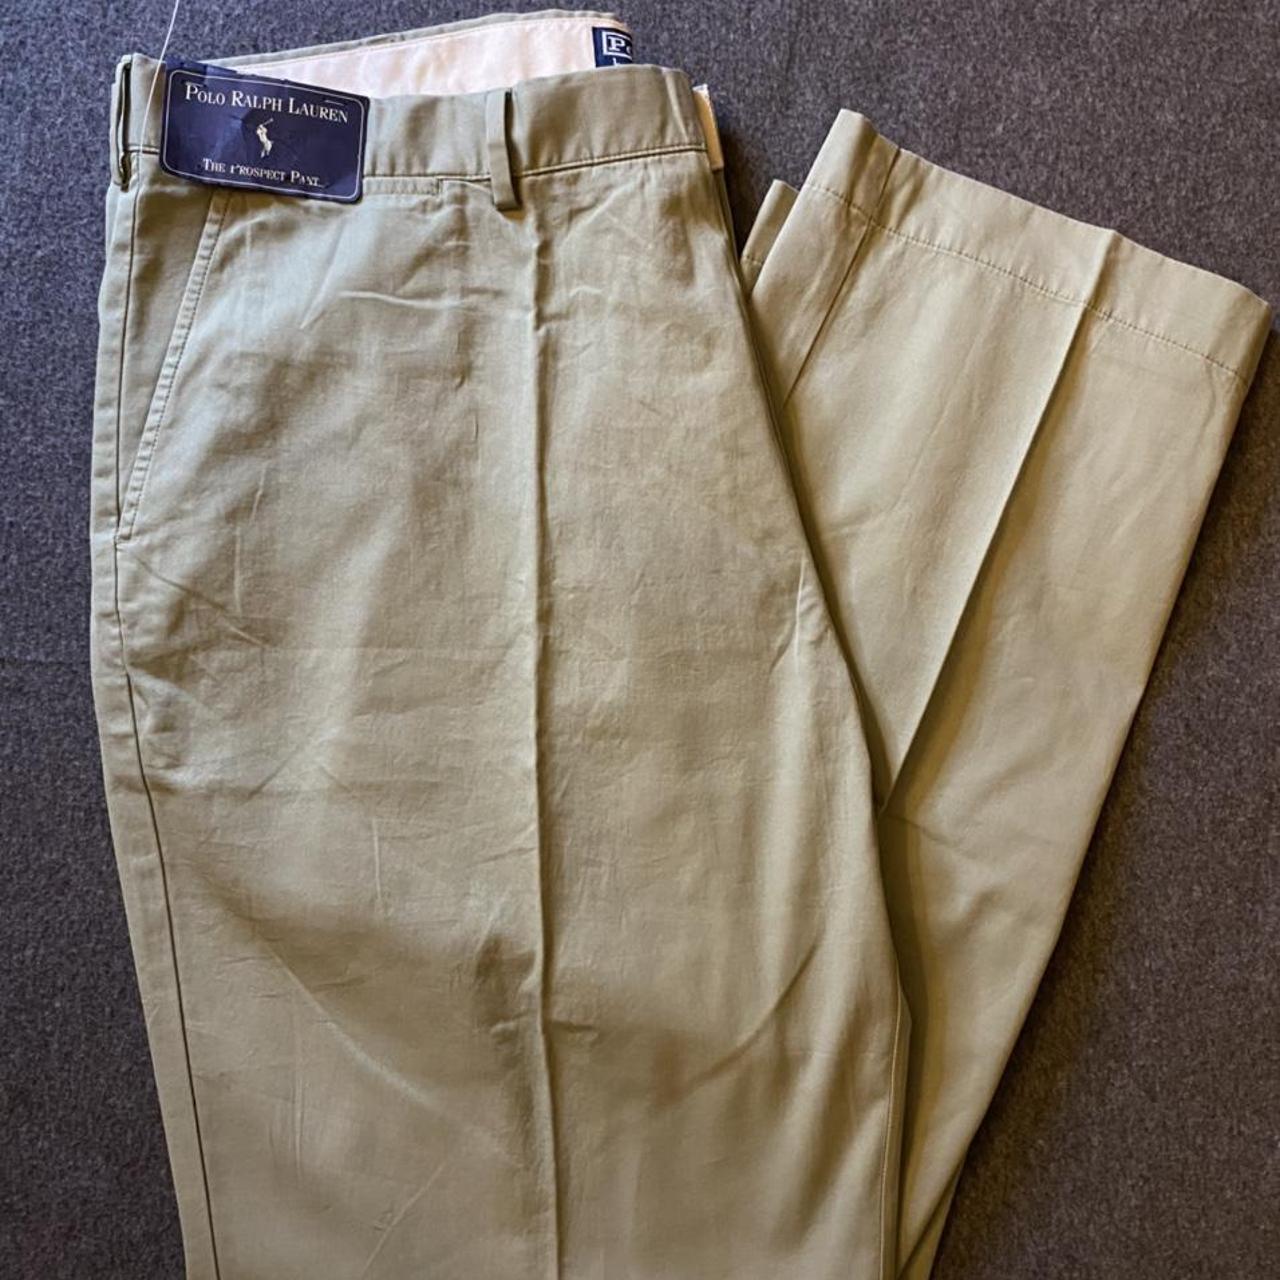 Polo Ralph Lauren The Prospect Pant Size 40 x... - Depop